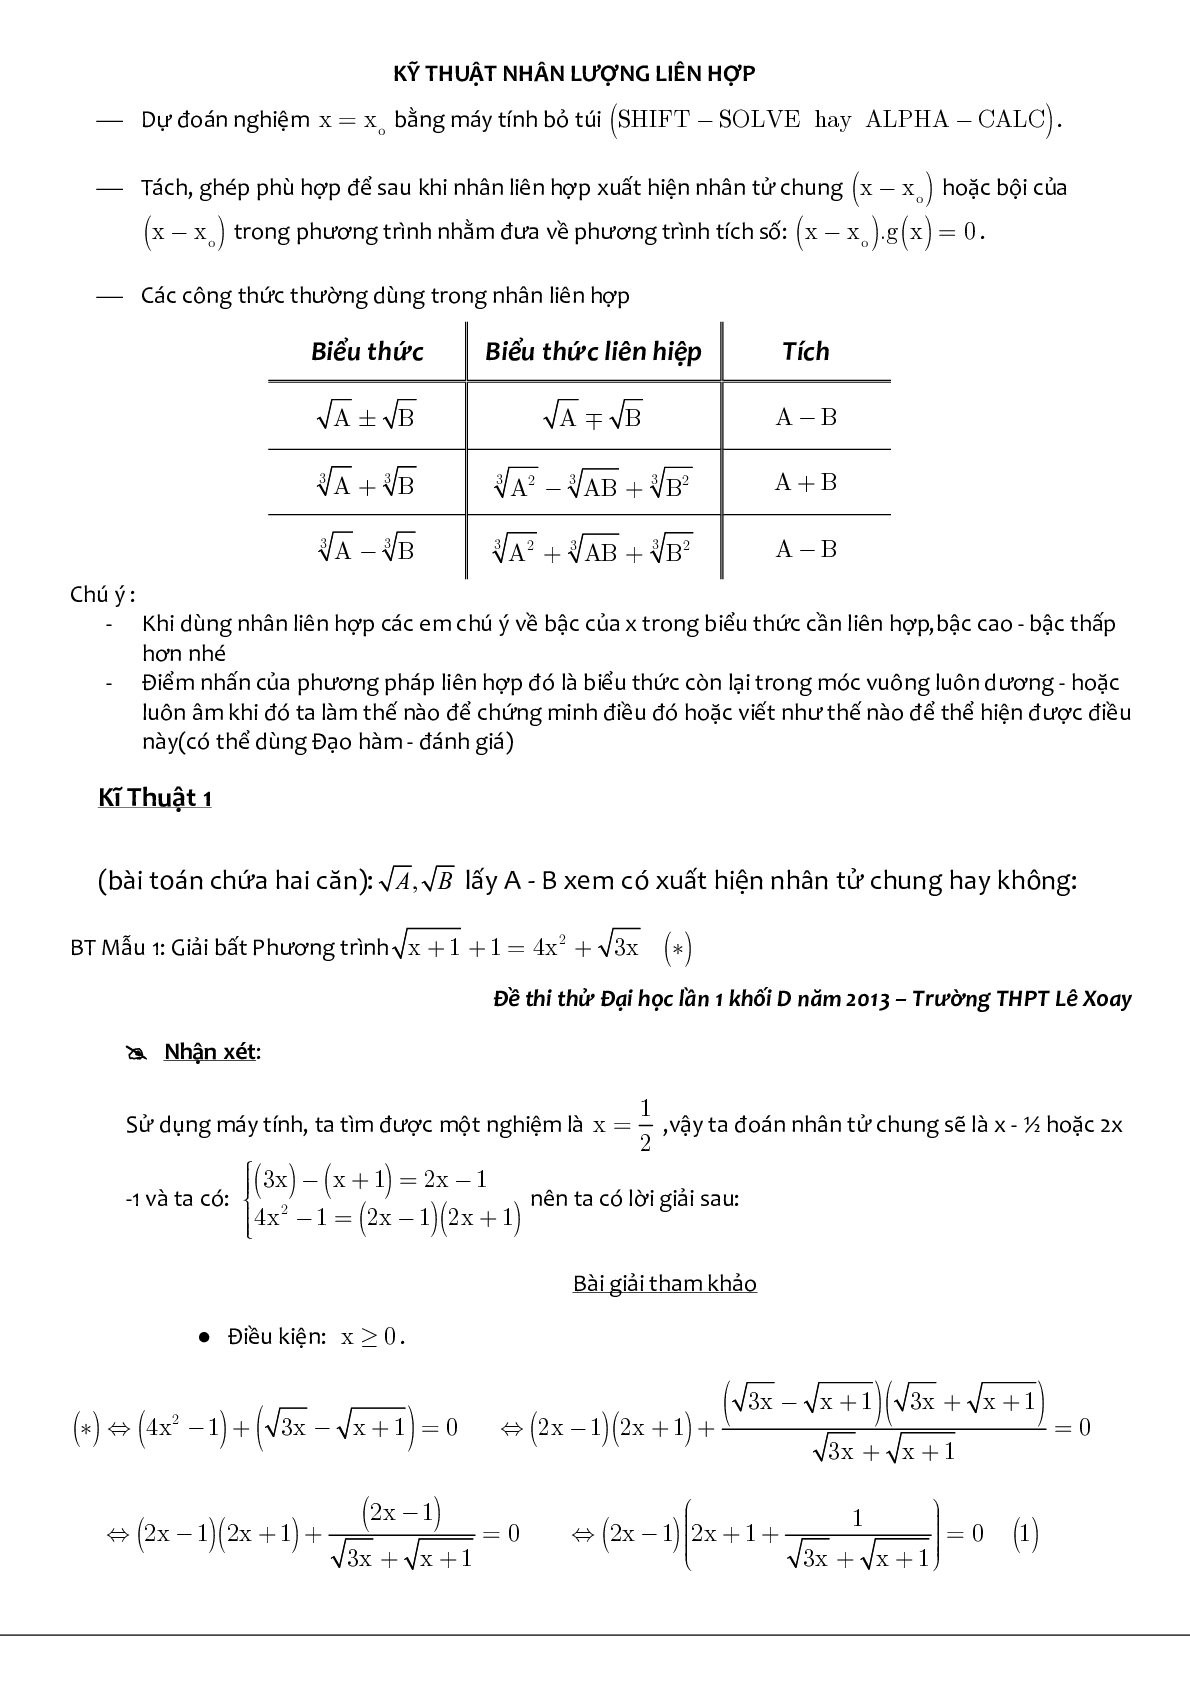 Kỹ thuật liên hợp giải phương trình chứa căn (trang 2)